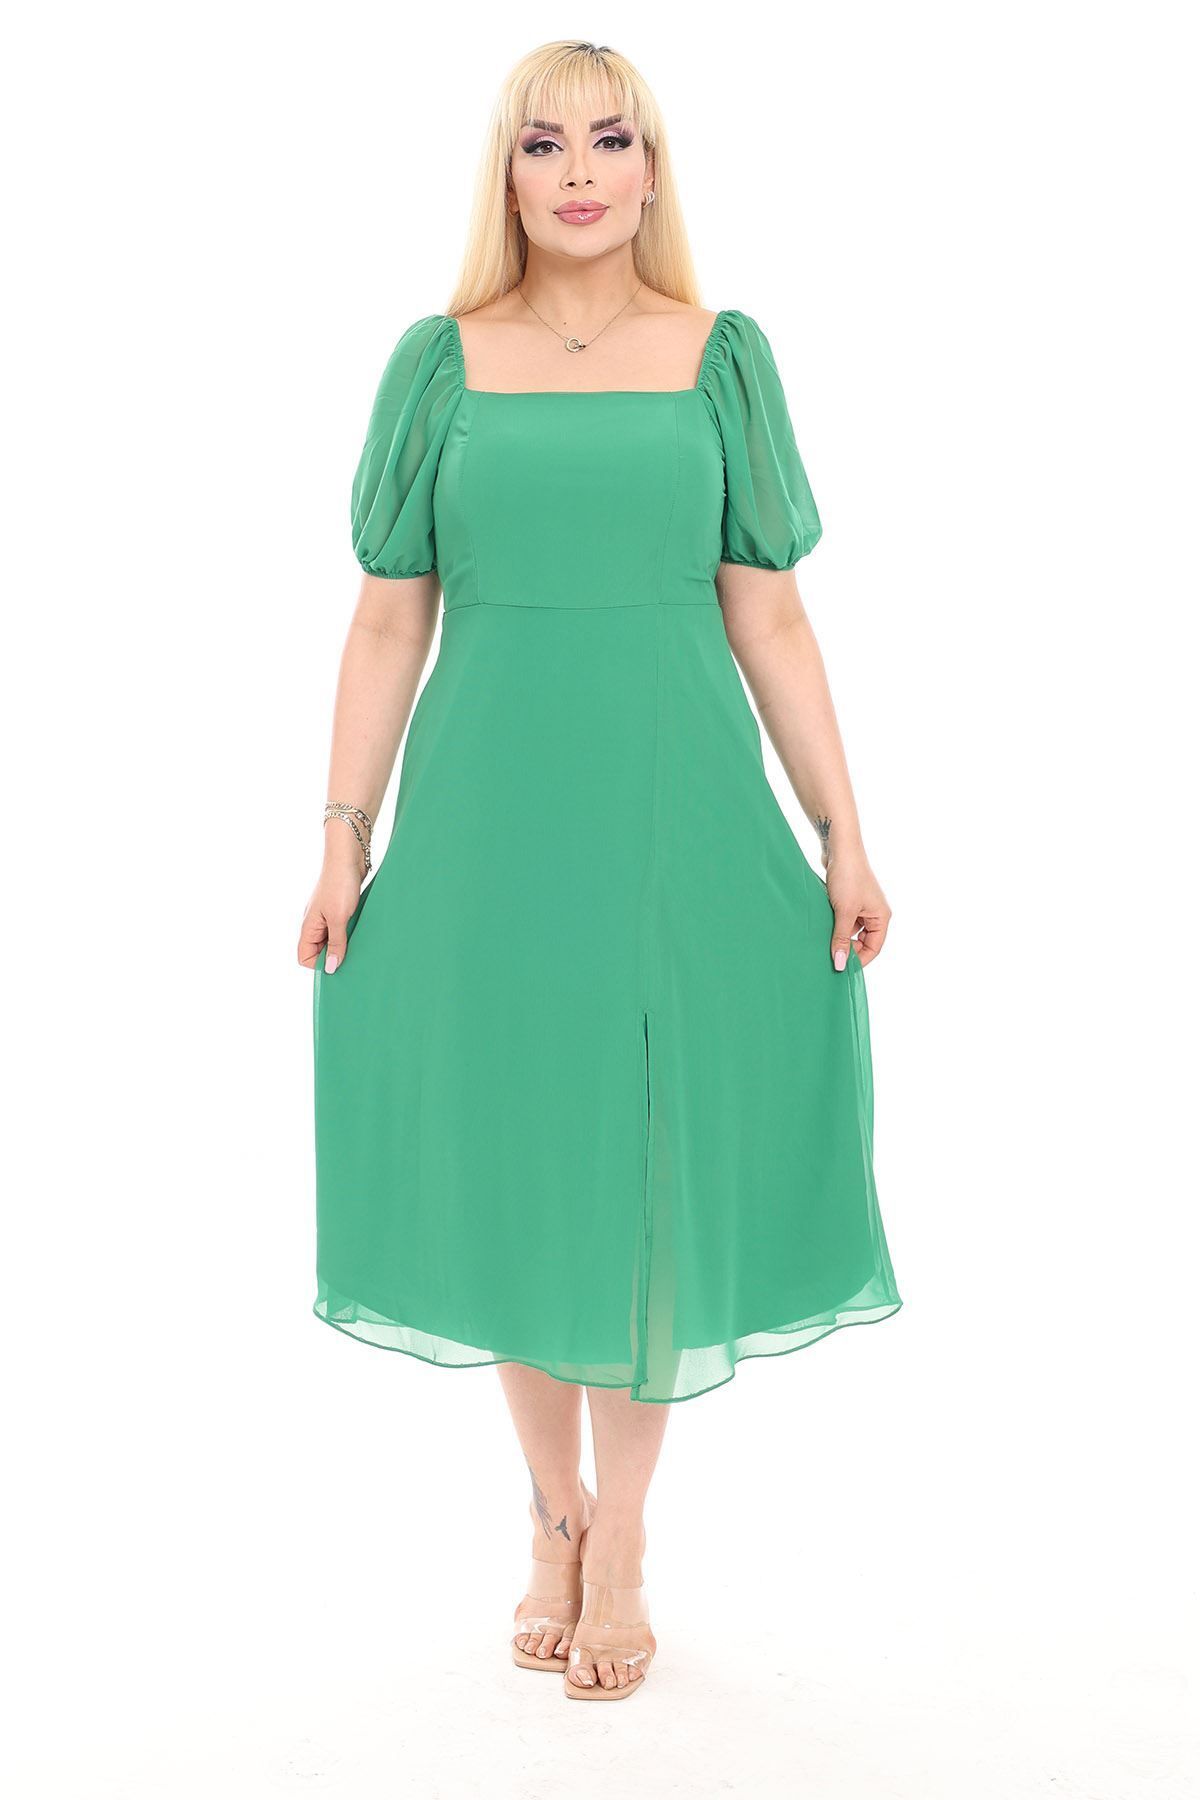 sharin Kadın Büyük Beden Yeşil Şifon Yırtmaçlı Yazlık Elbise 8D-2152